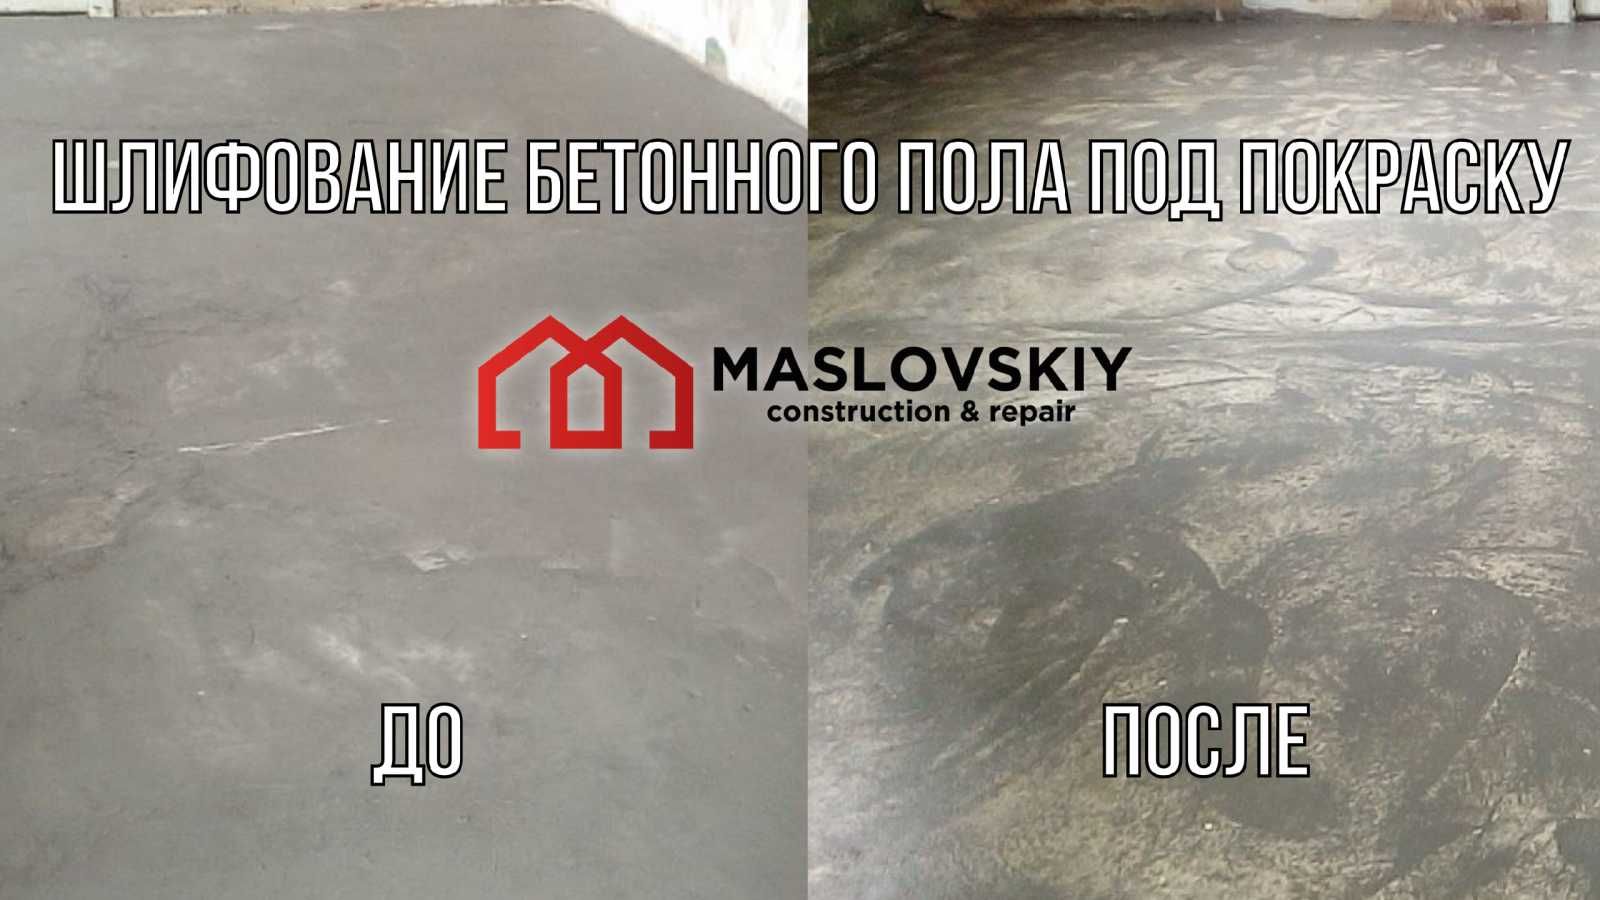 Шліфування бетону, граніту, мармуру. Відновлення бетонних підлог.